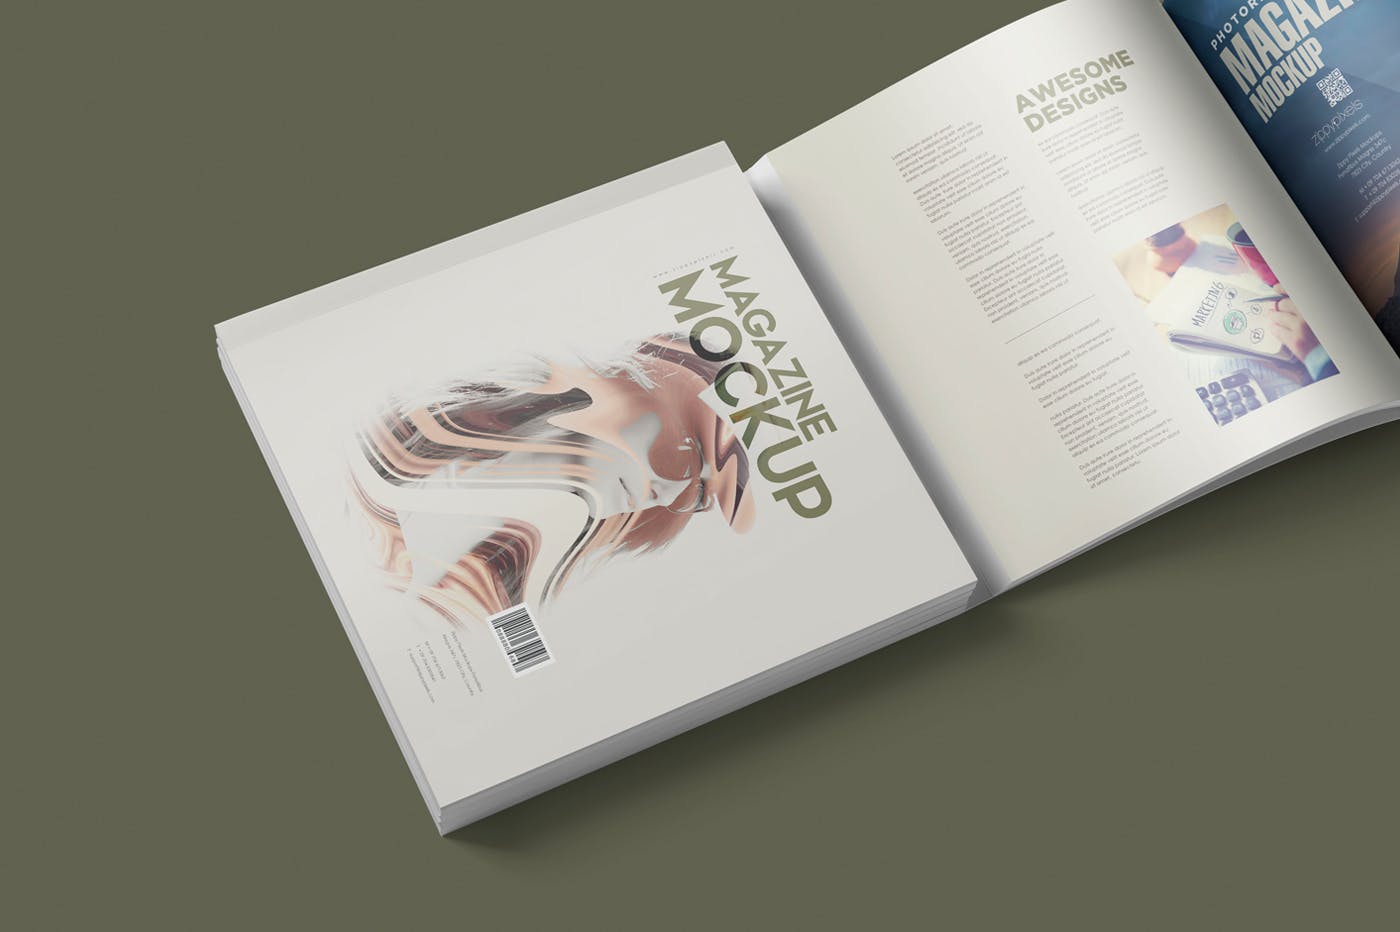 方形杂志印刷效果图样机蚂蚁素材精选PSD模板 Square Magazine Mockup Set插图(3)